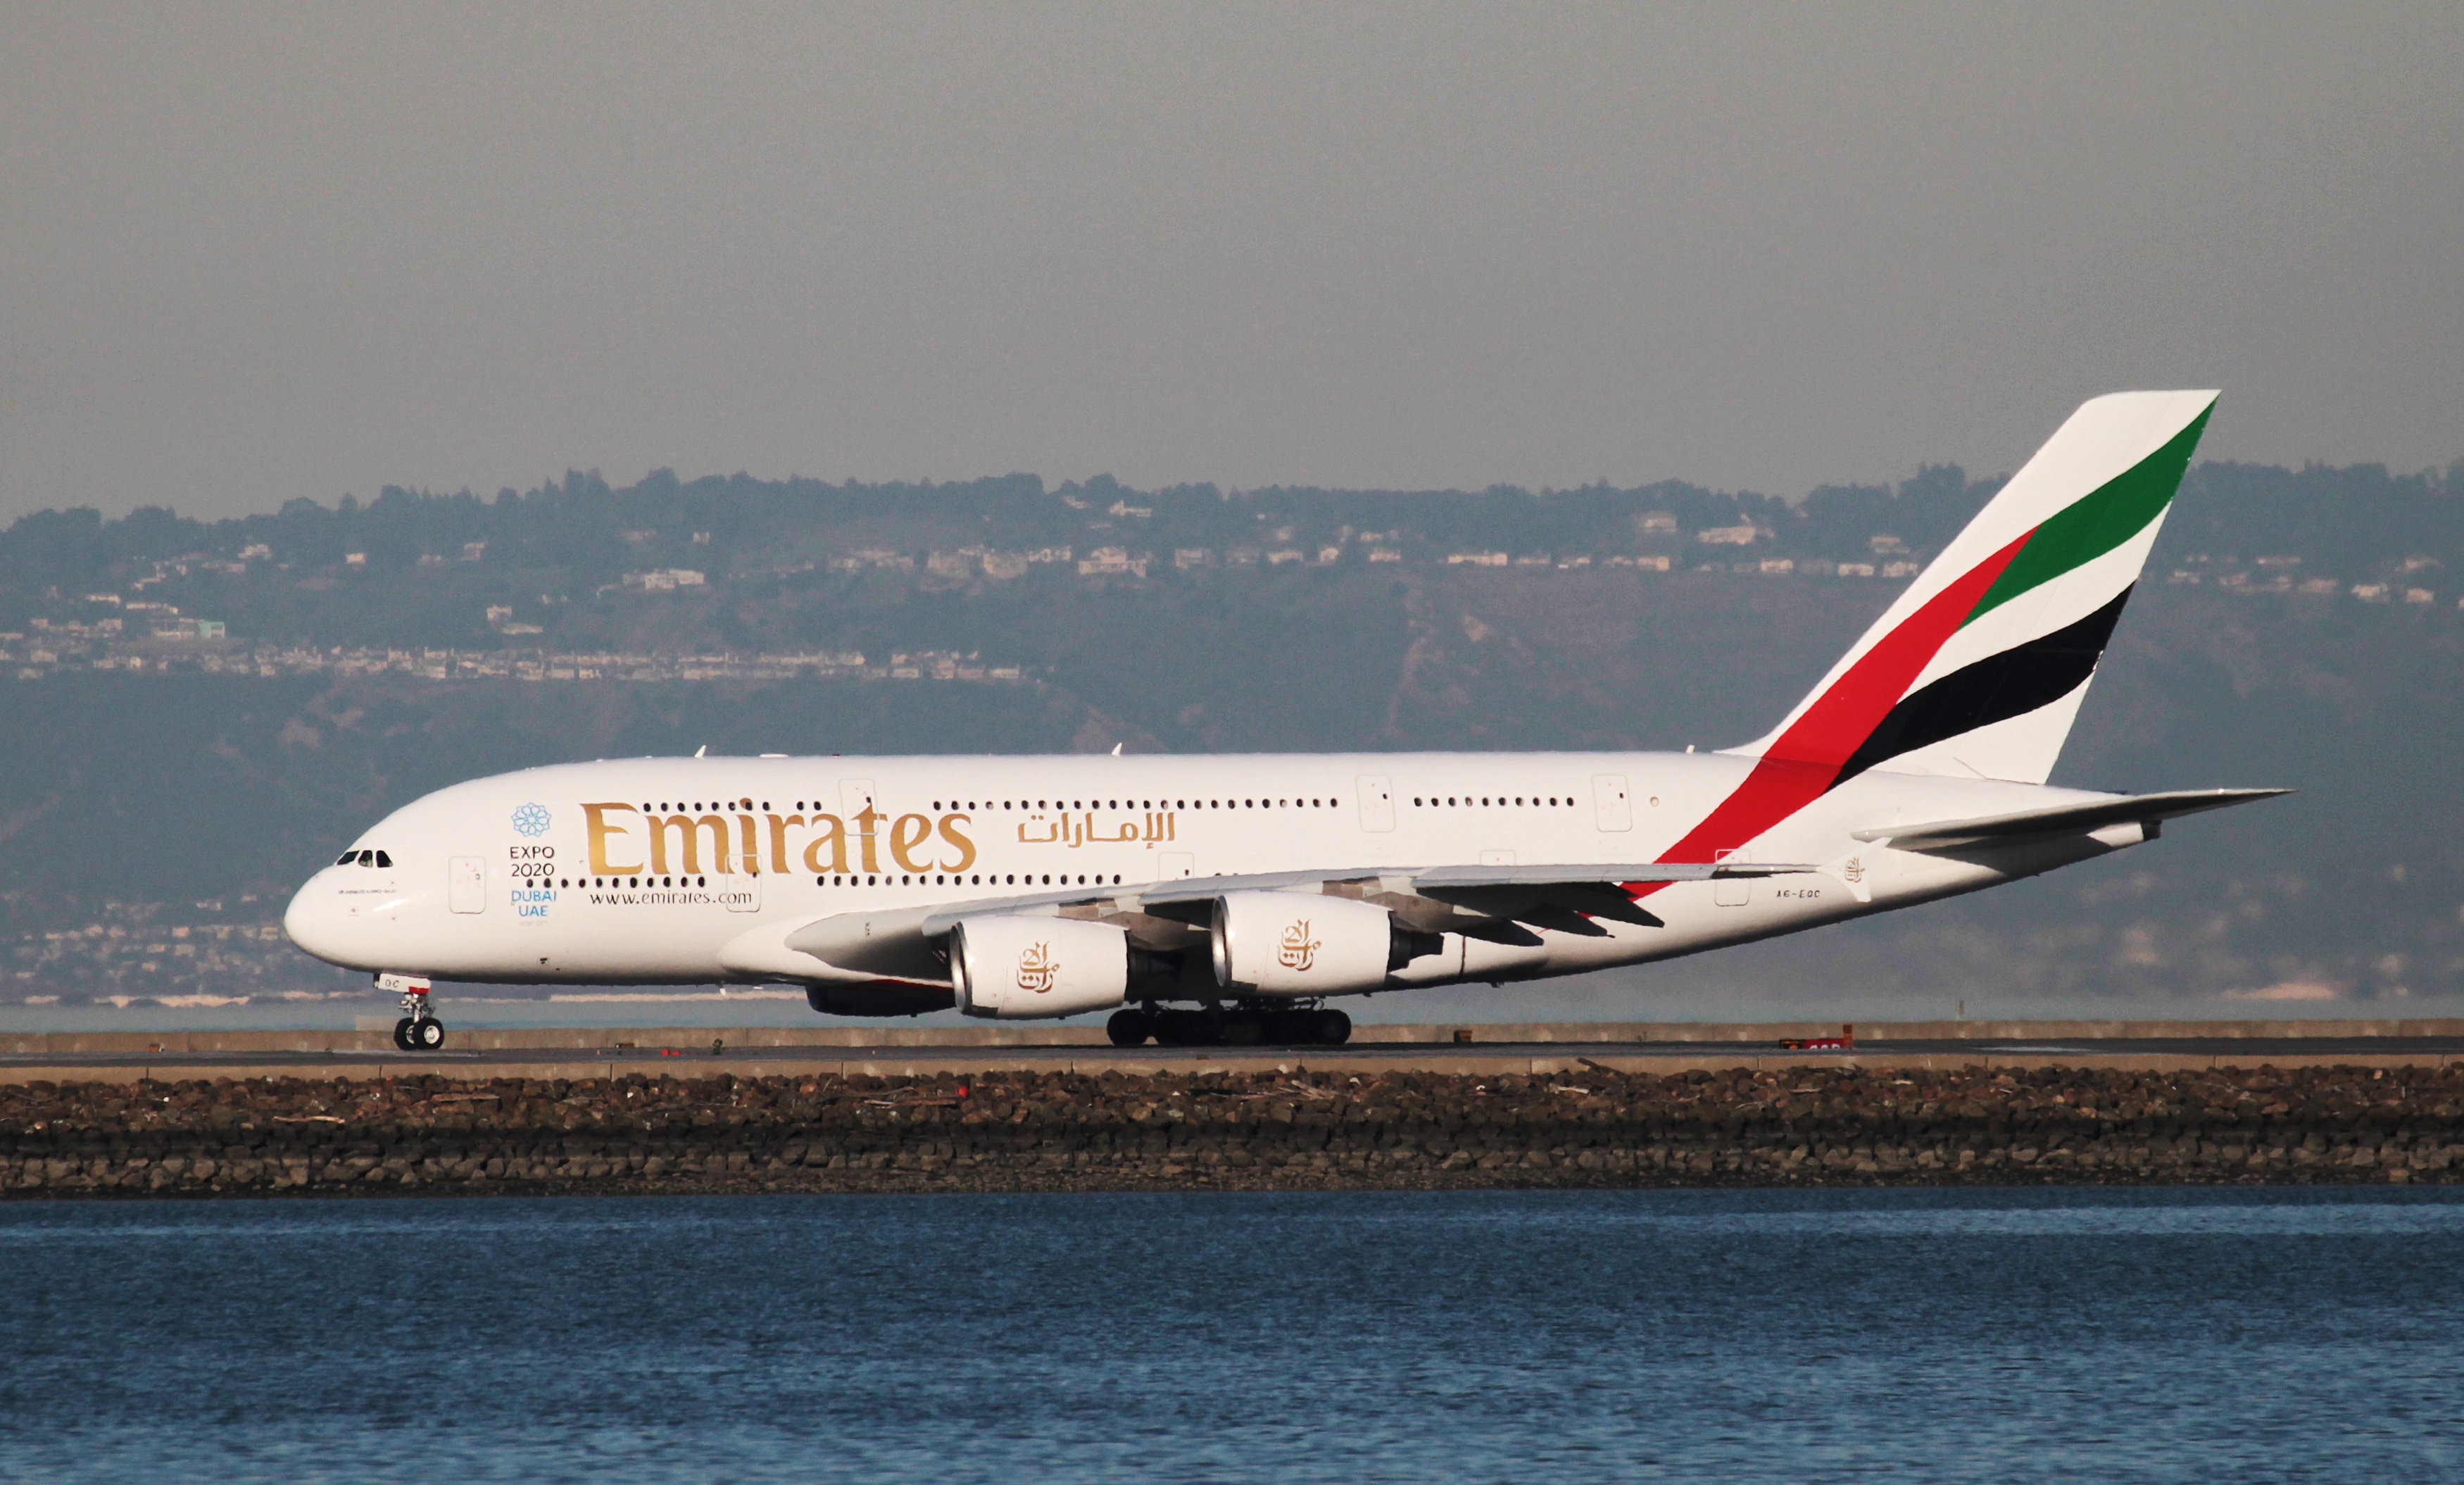 空中巨無霸 A380避過停產厄運阿聯酋航空宣布購入架客機 香港01 即時國際